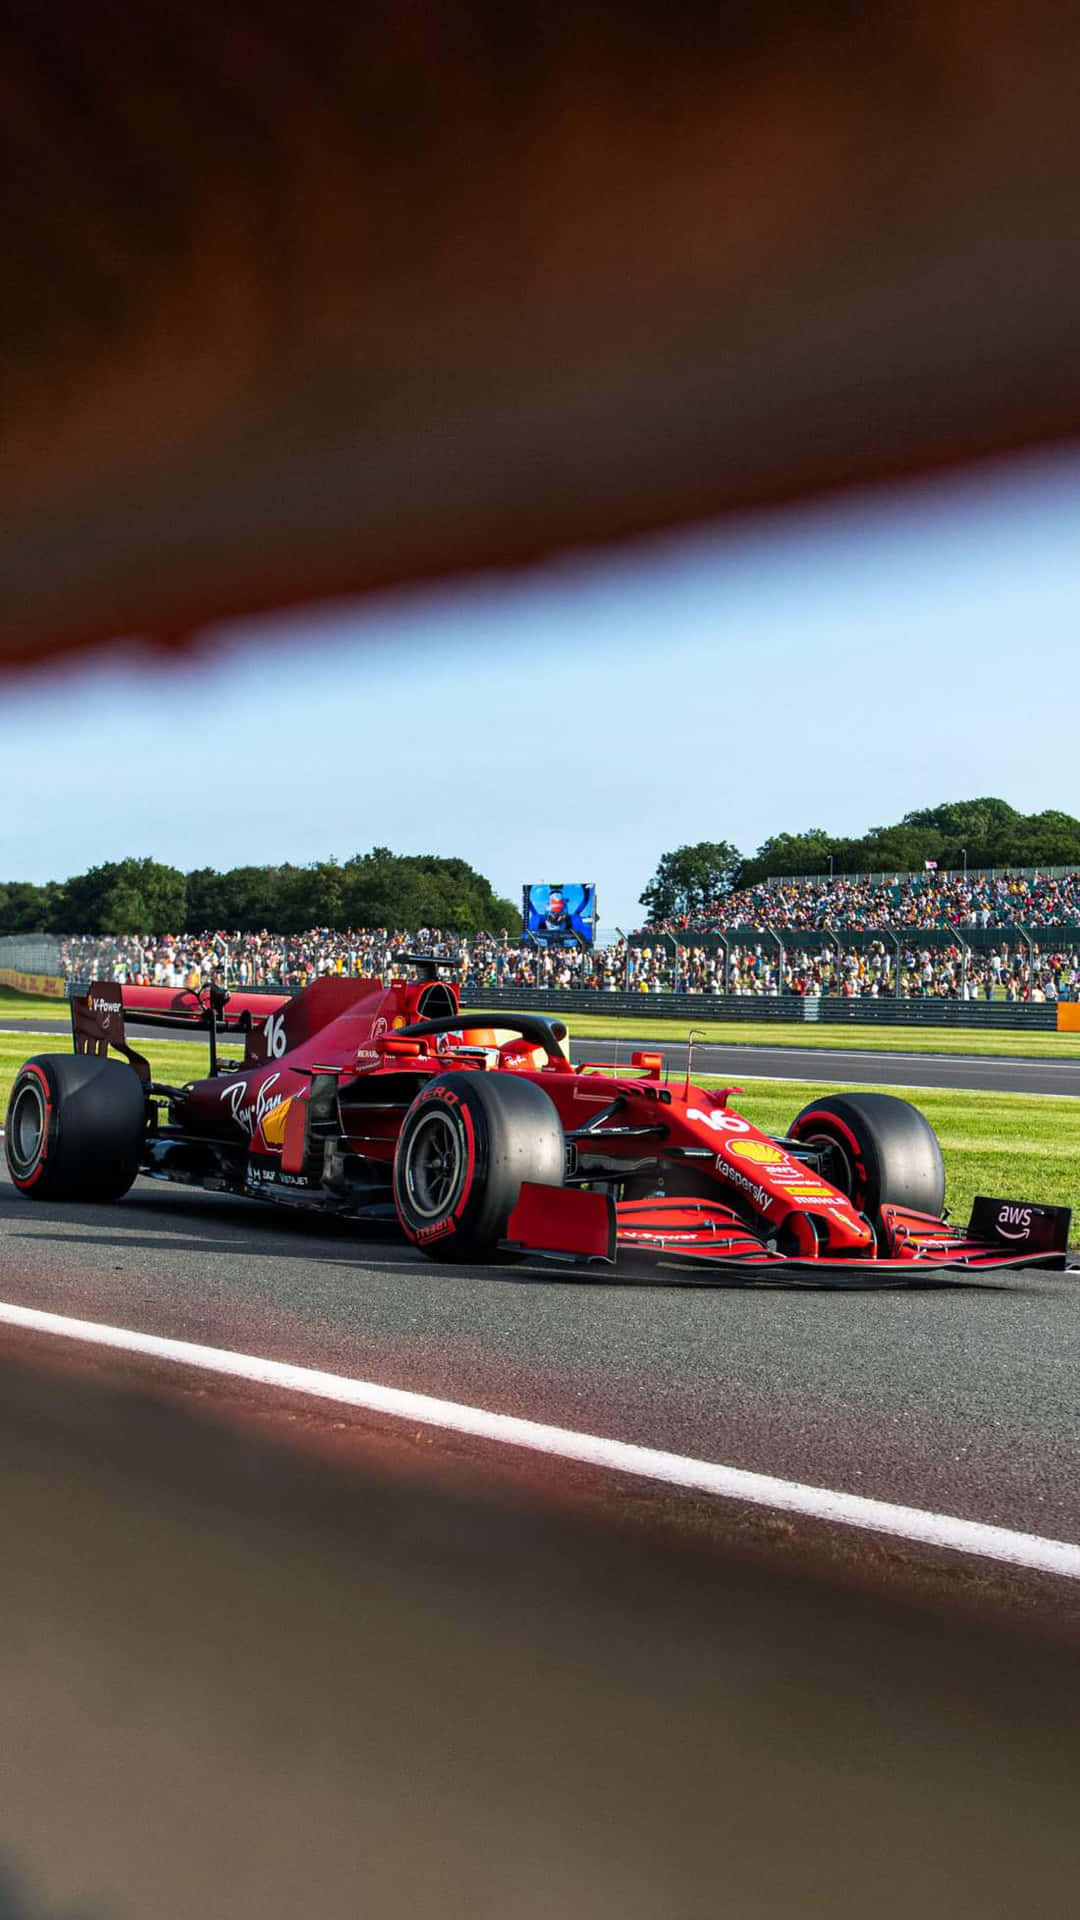 Ferrari F1 Racing Car Driving On A Track Wallpaper